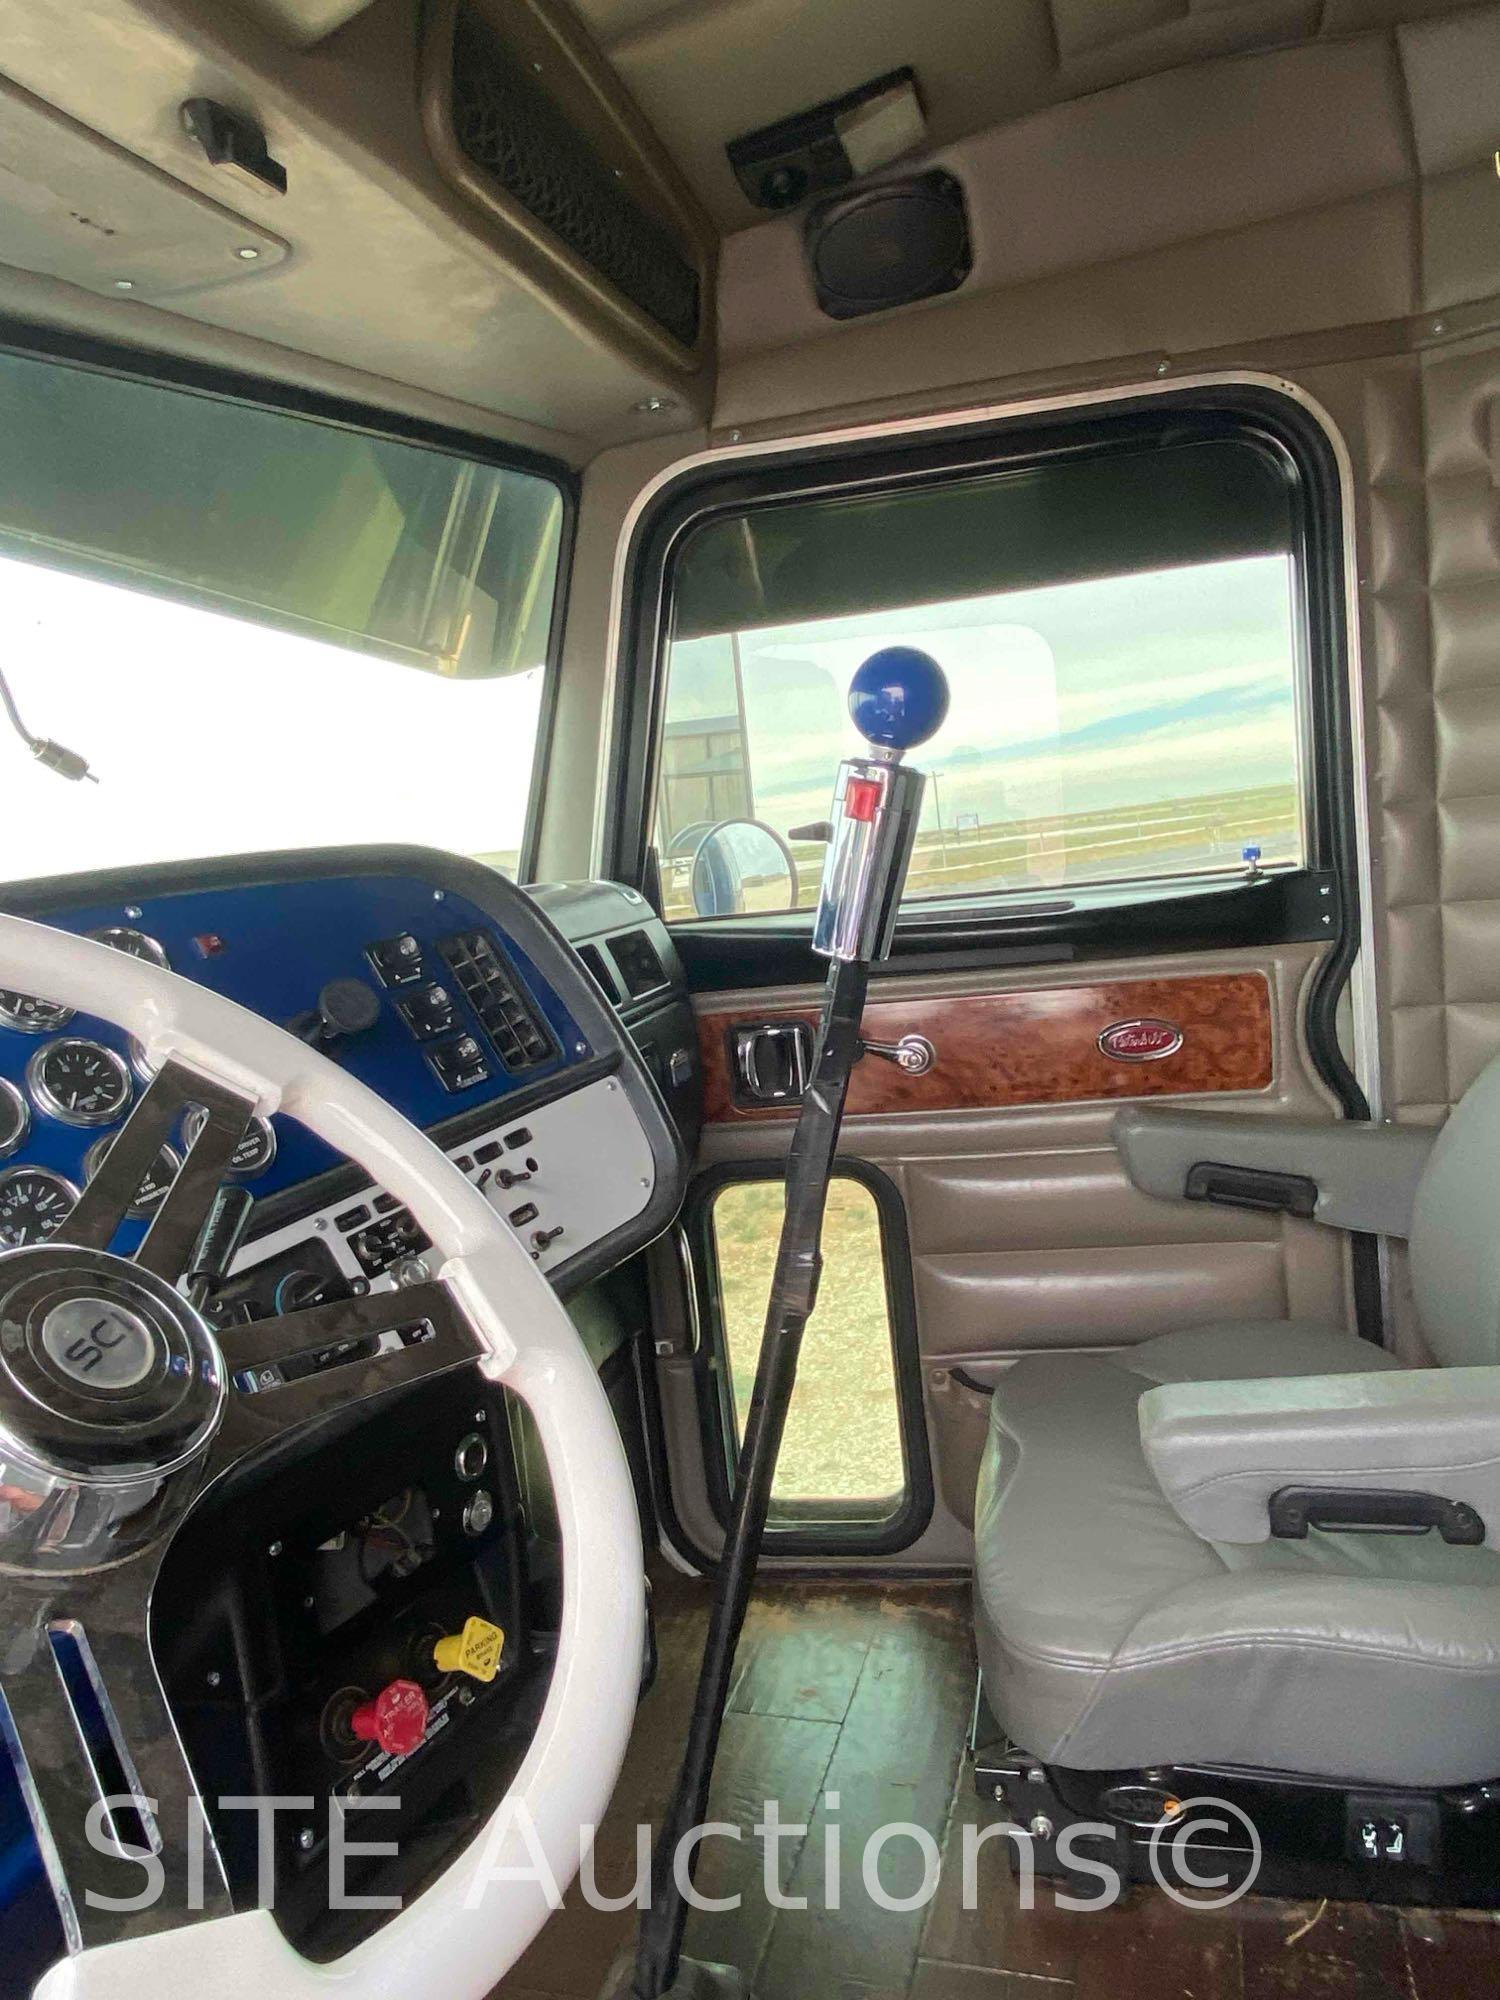 2005 Peterbilt 379 T/A Sleeper Truck Tractor